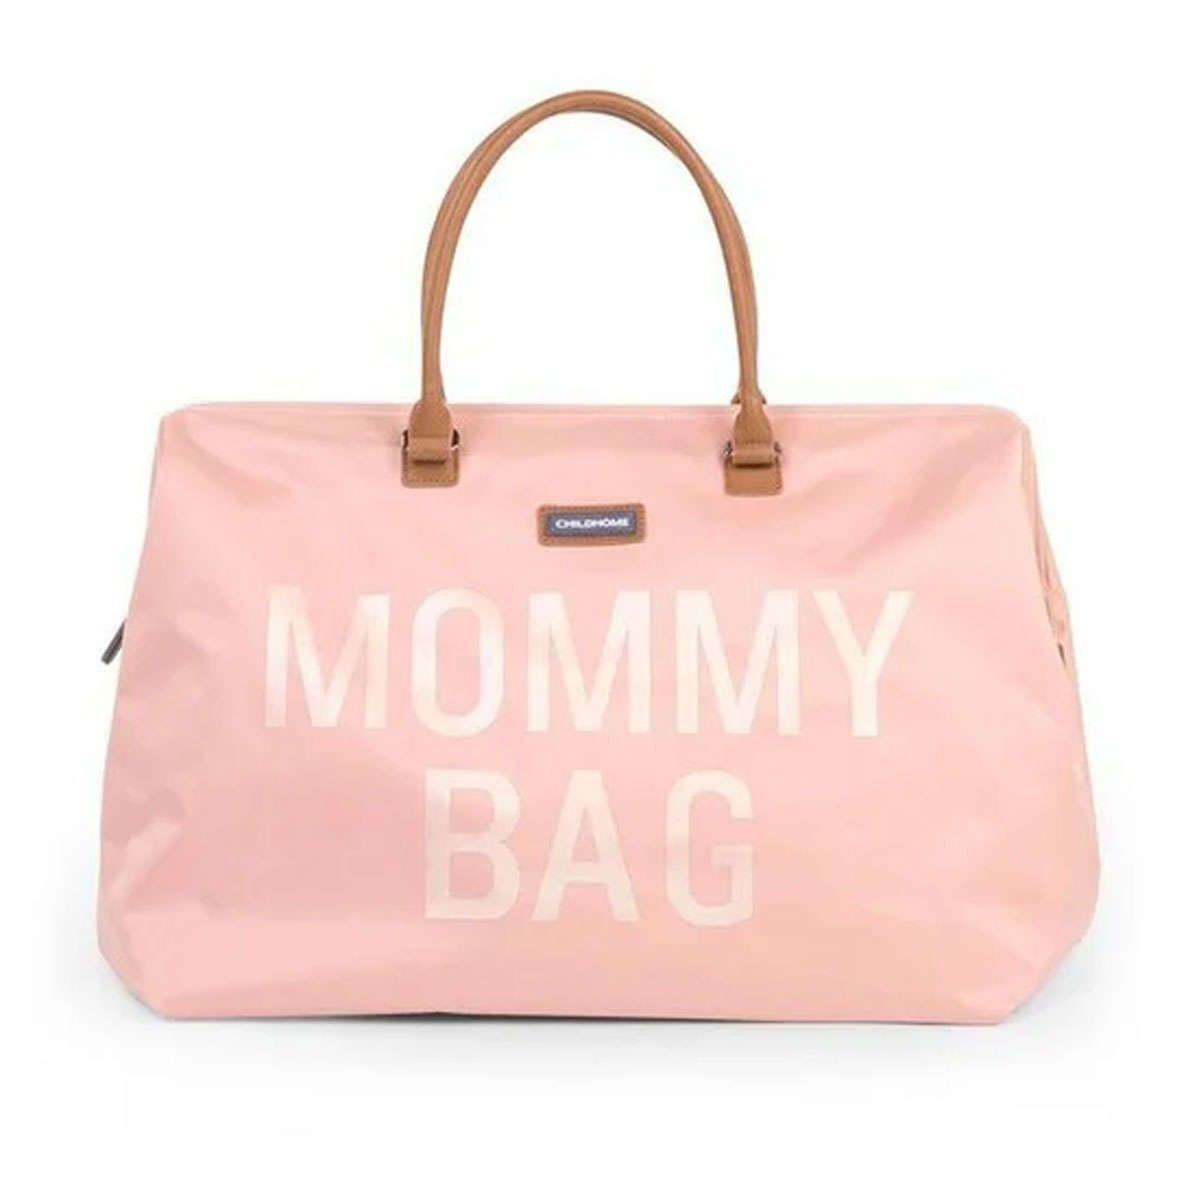 Τσάντα αλλαγής Mommy Bag Big pink Childhome